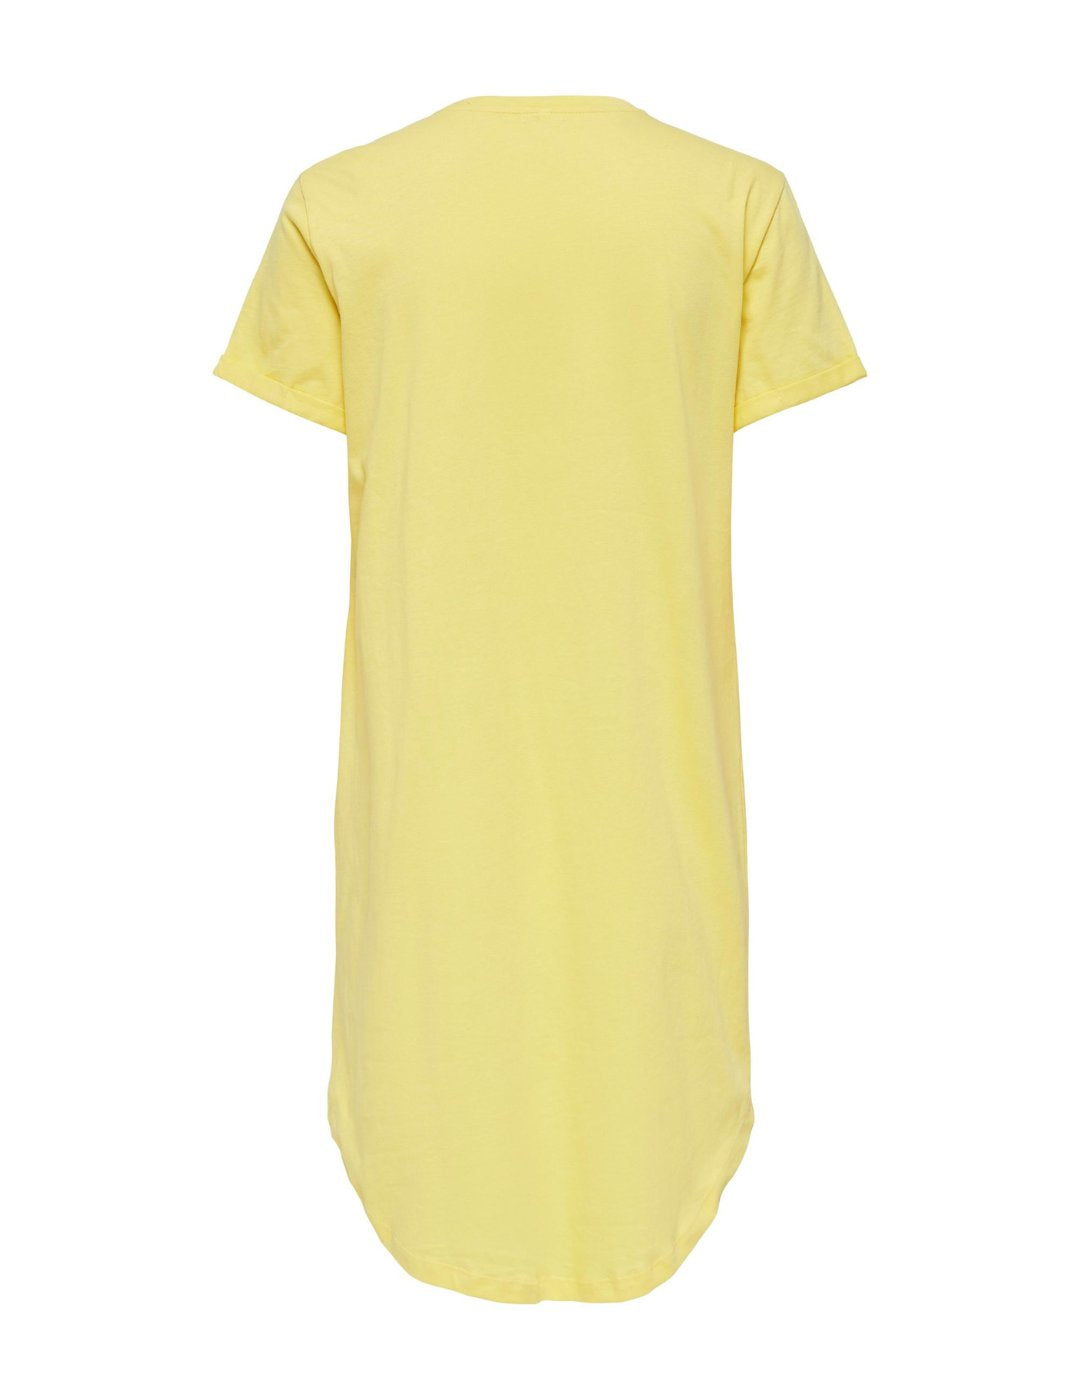 Vestido básico amarillo Only May | Bicos de Fío